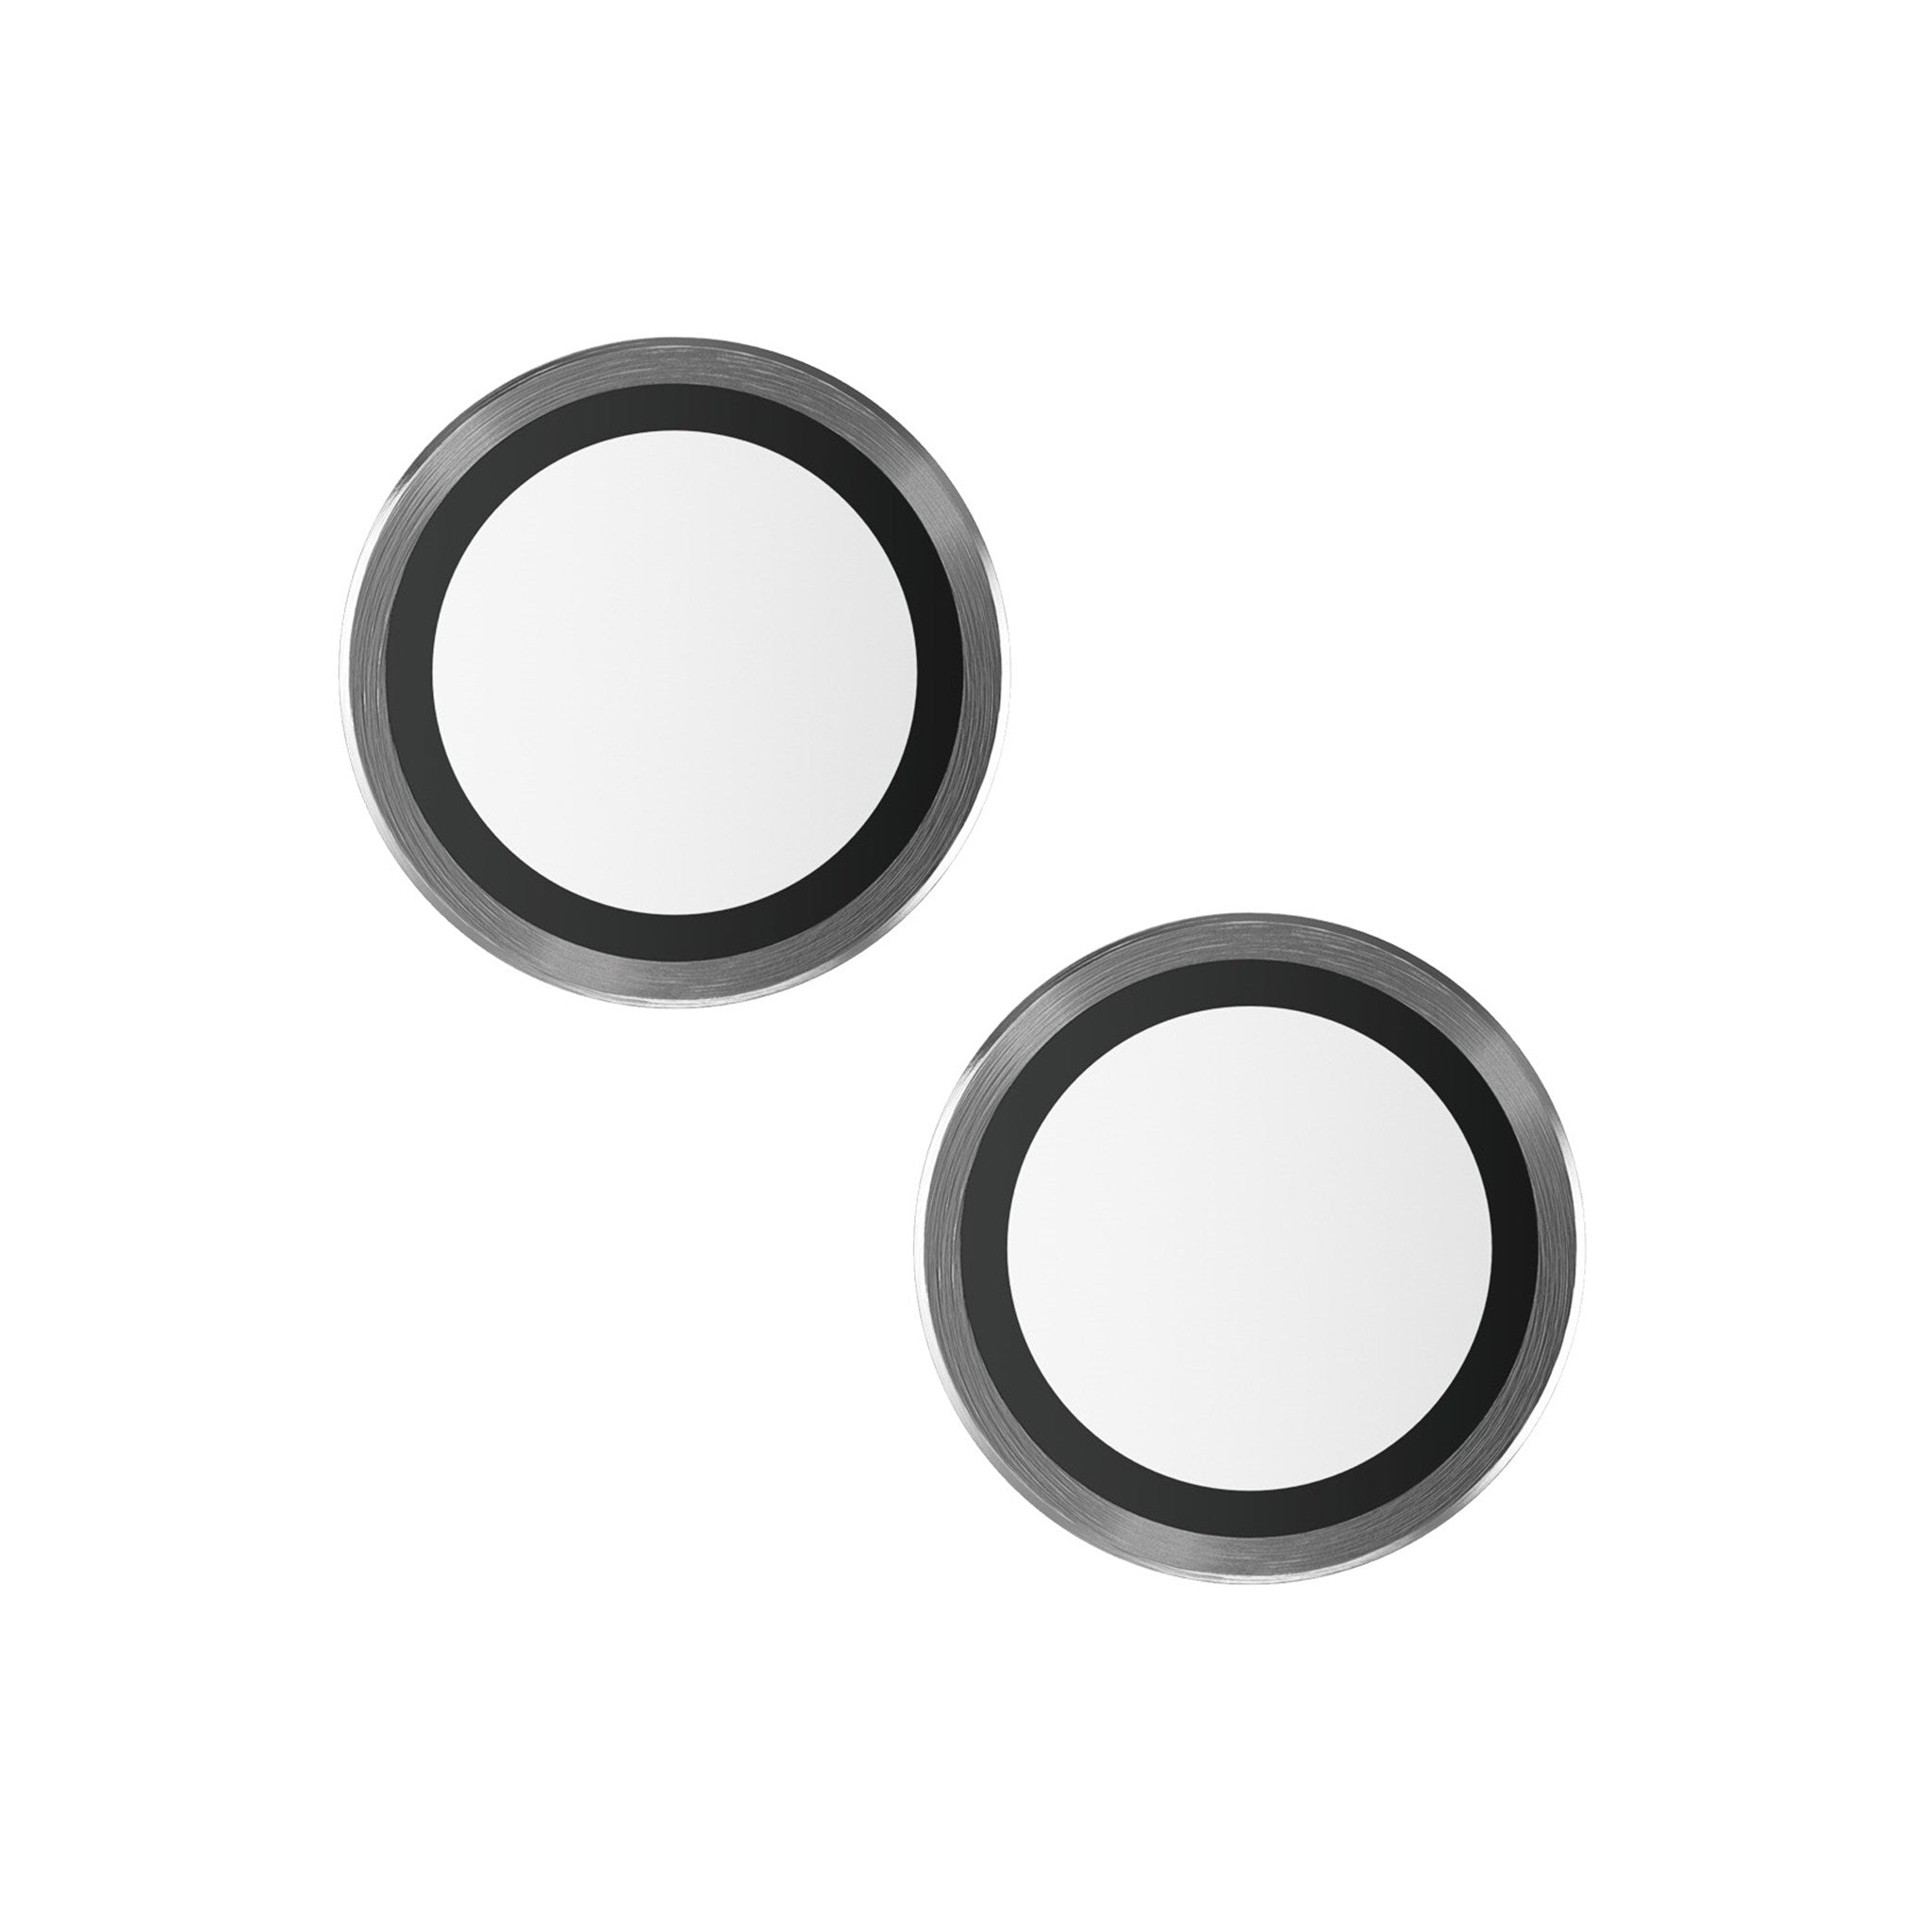 PANZERGLASS Hoops™ 13 Kameraschutz | Kameraschutz(für Apple 13) iPhone mini